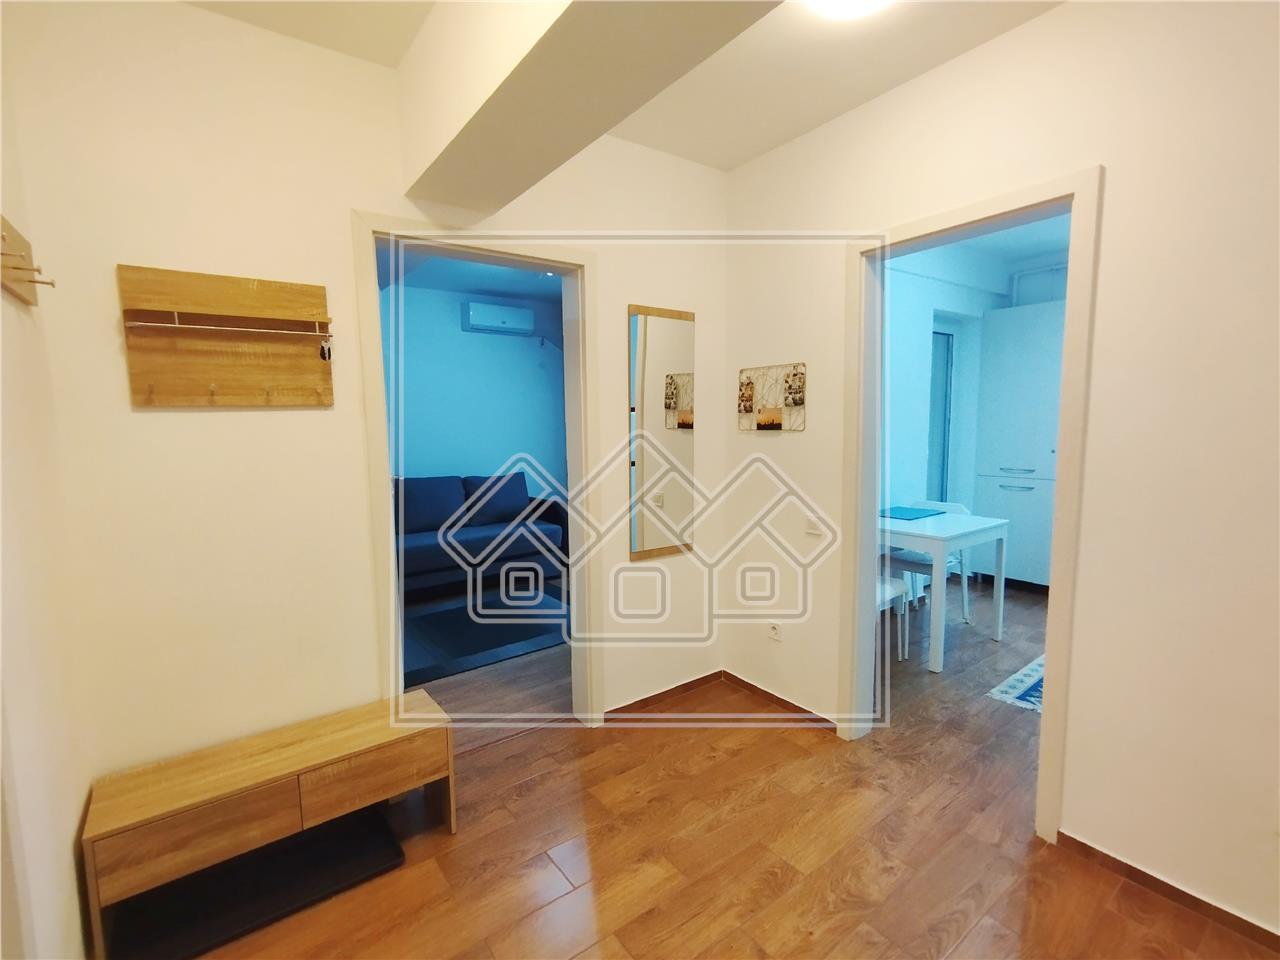 Apartament de inchiriat in Sibiu - 2 camere, decomandat, bloc cu lift